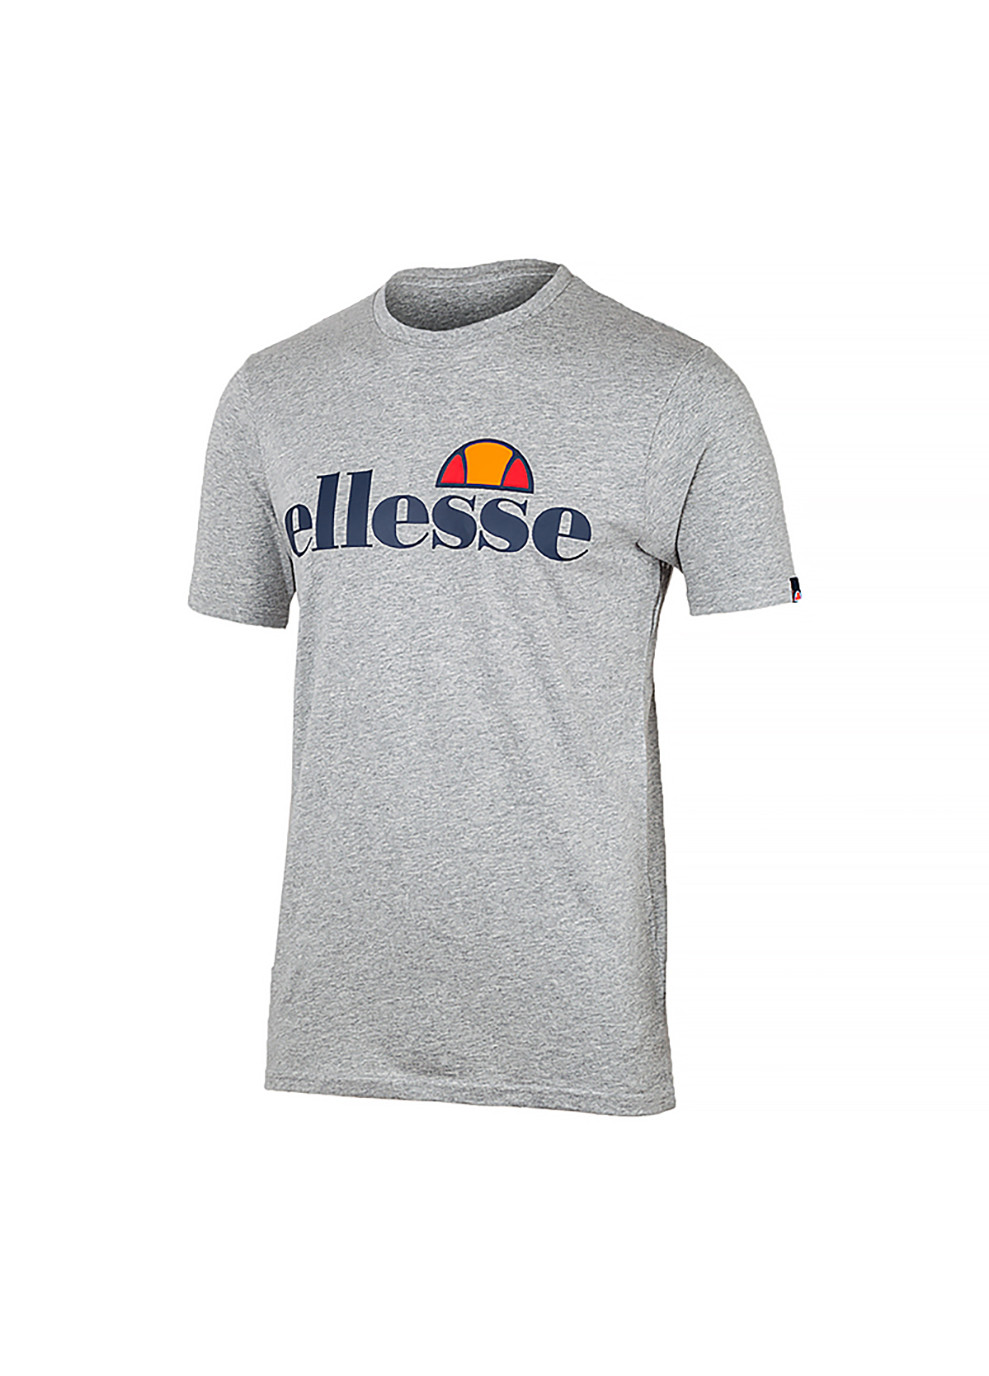 Серая мужская футболка sl prado серый 2xl (shc07405-grey-marl 2xl) Ellesse